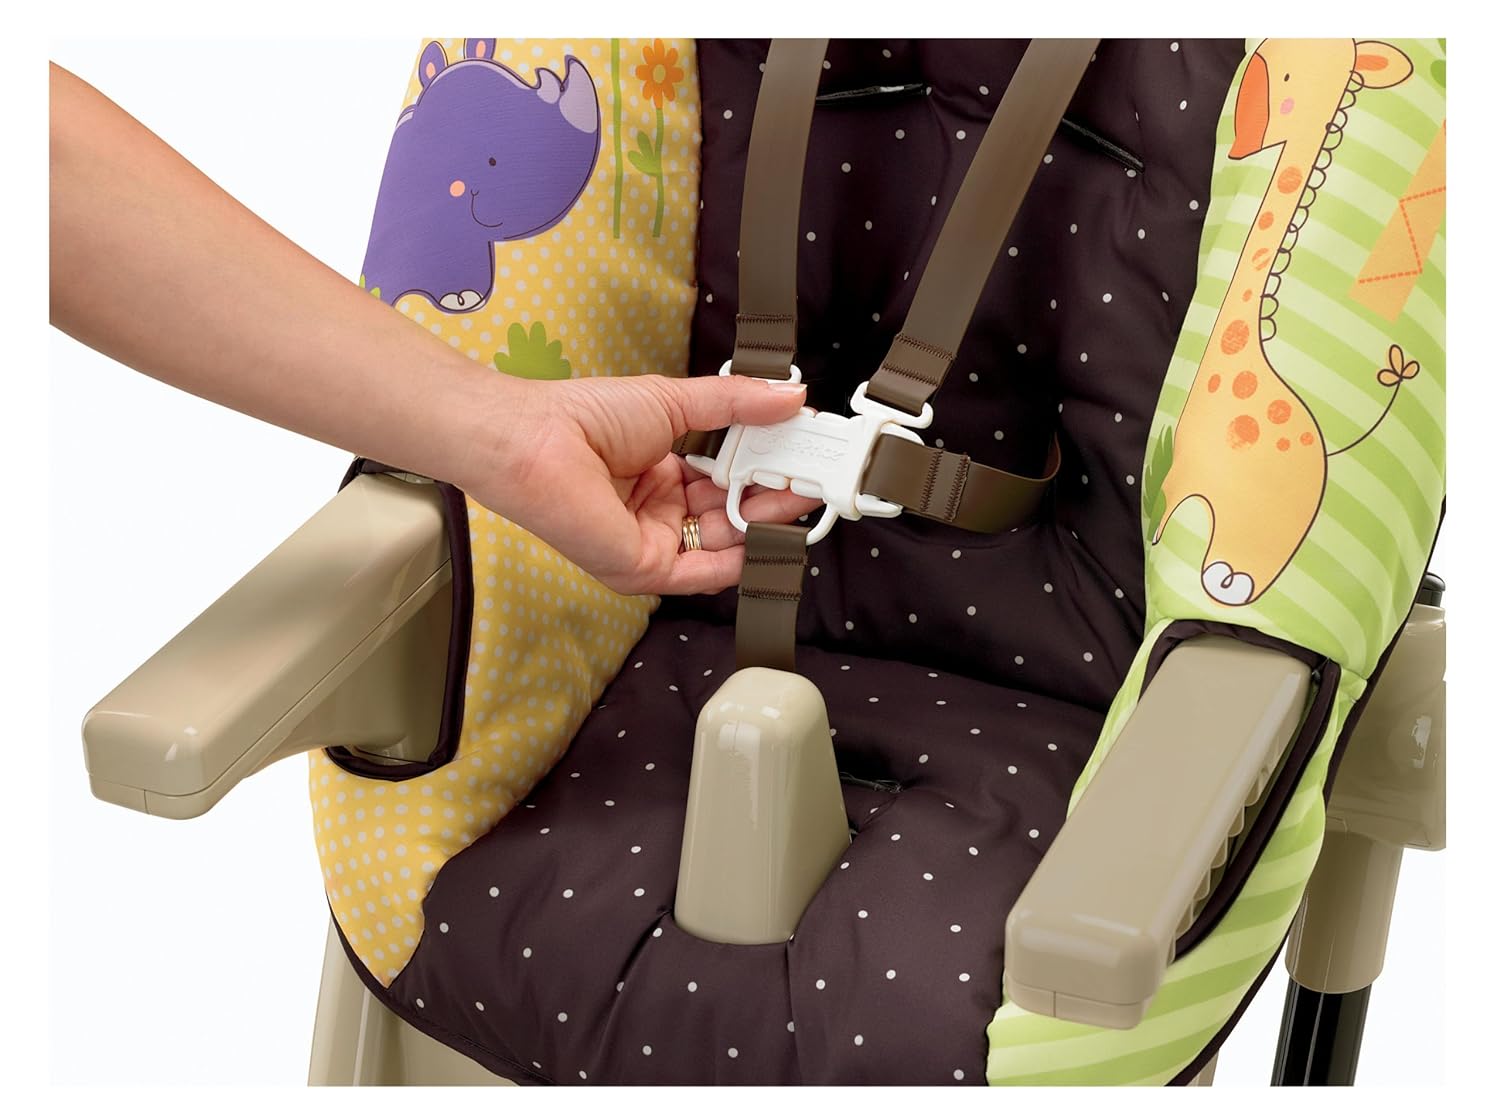 Безопасность превыше всего: стульчики для кормления с надежными ремнями безопасности обеспечивают благополучие ребенка